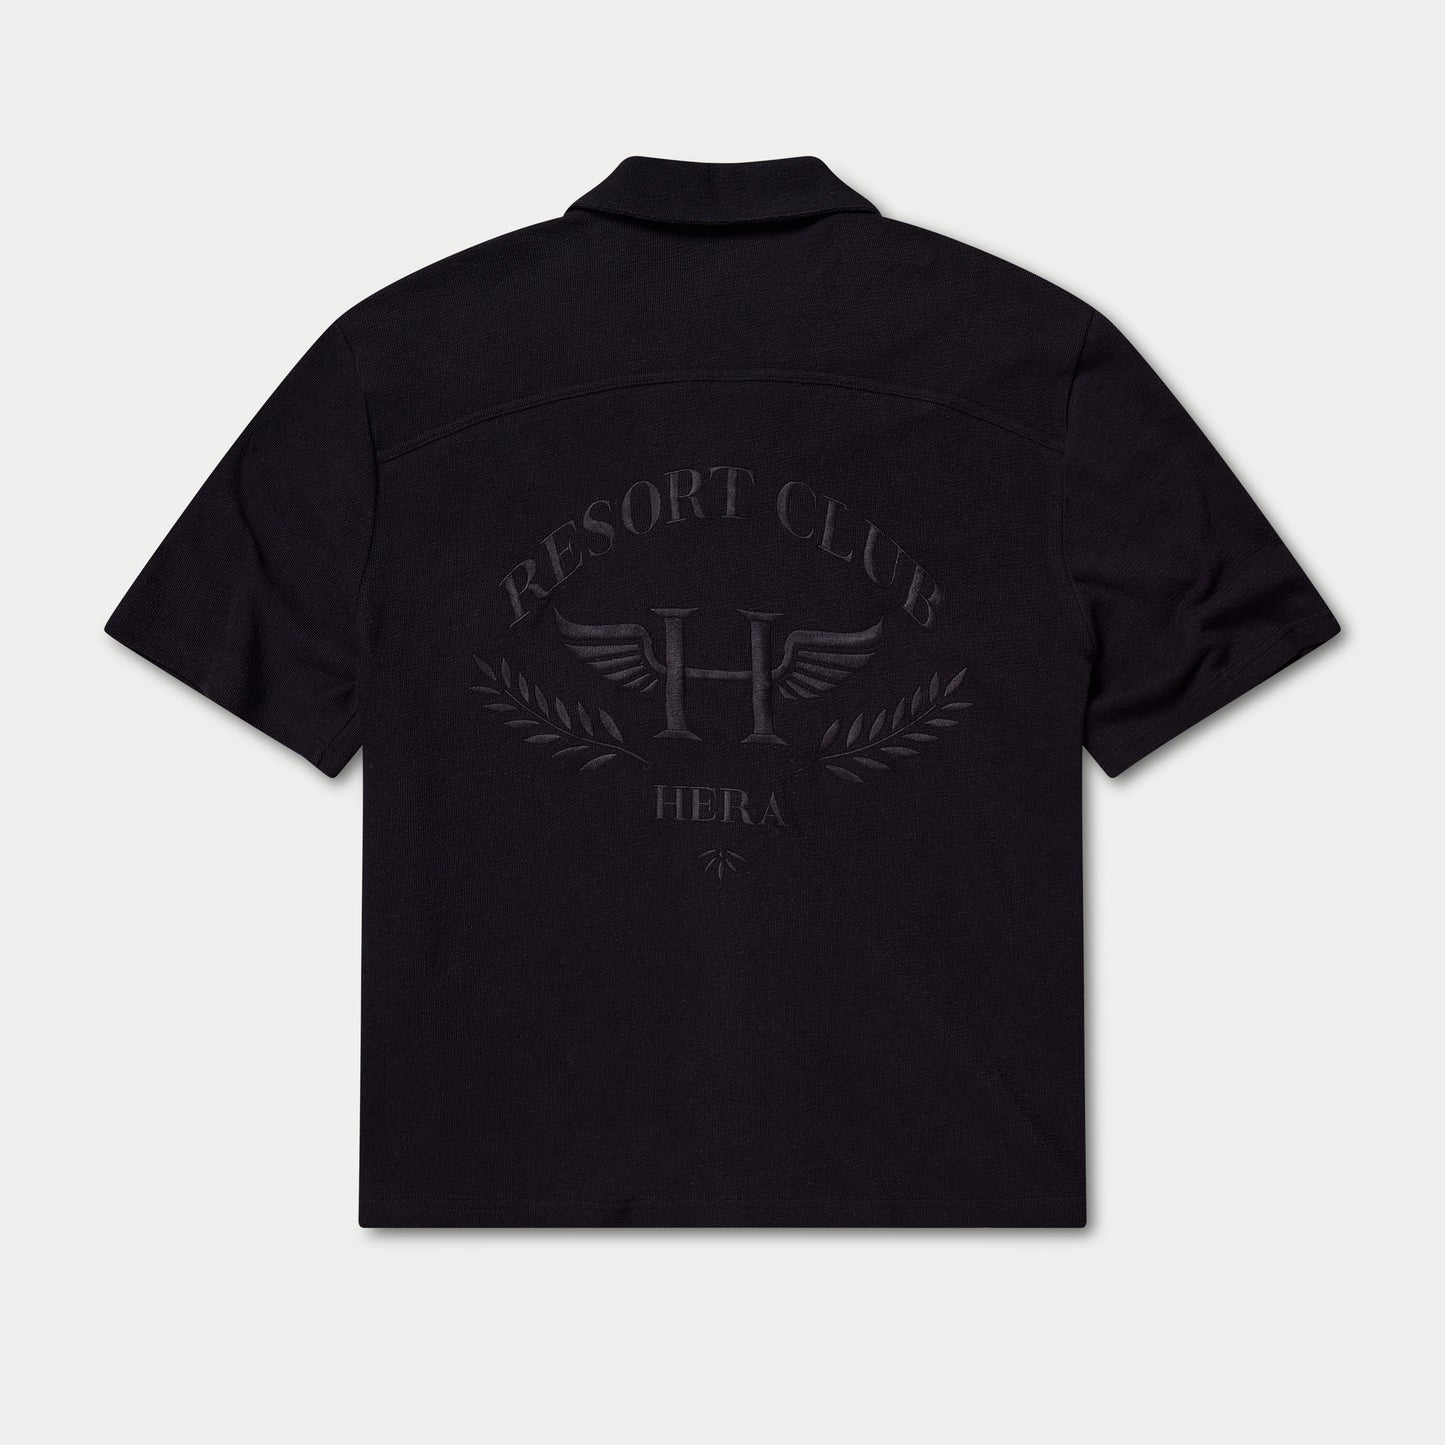 قميص نادي المنتجع للرجال - أسود